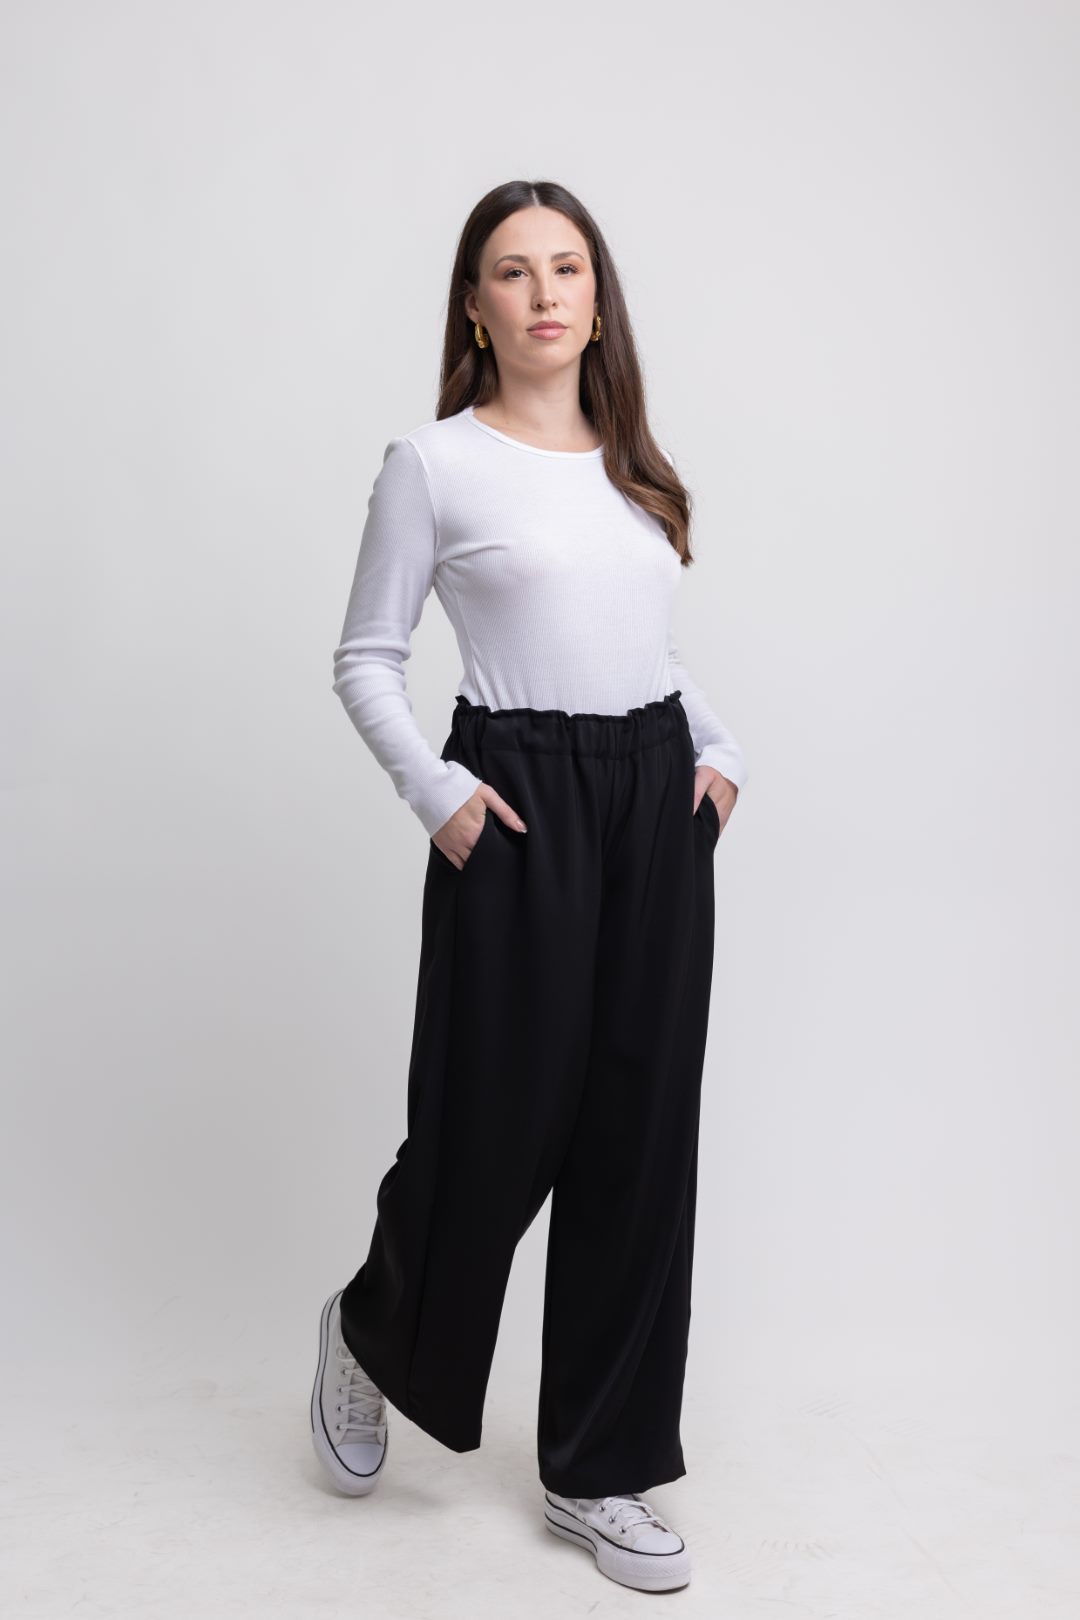 Women's Comfy Noir Pants - Synchronize Clothing